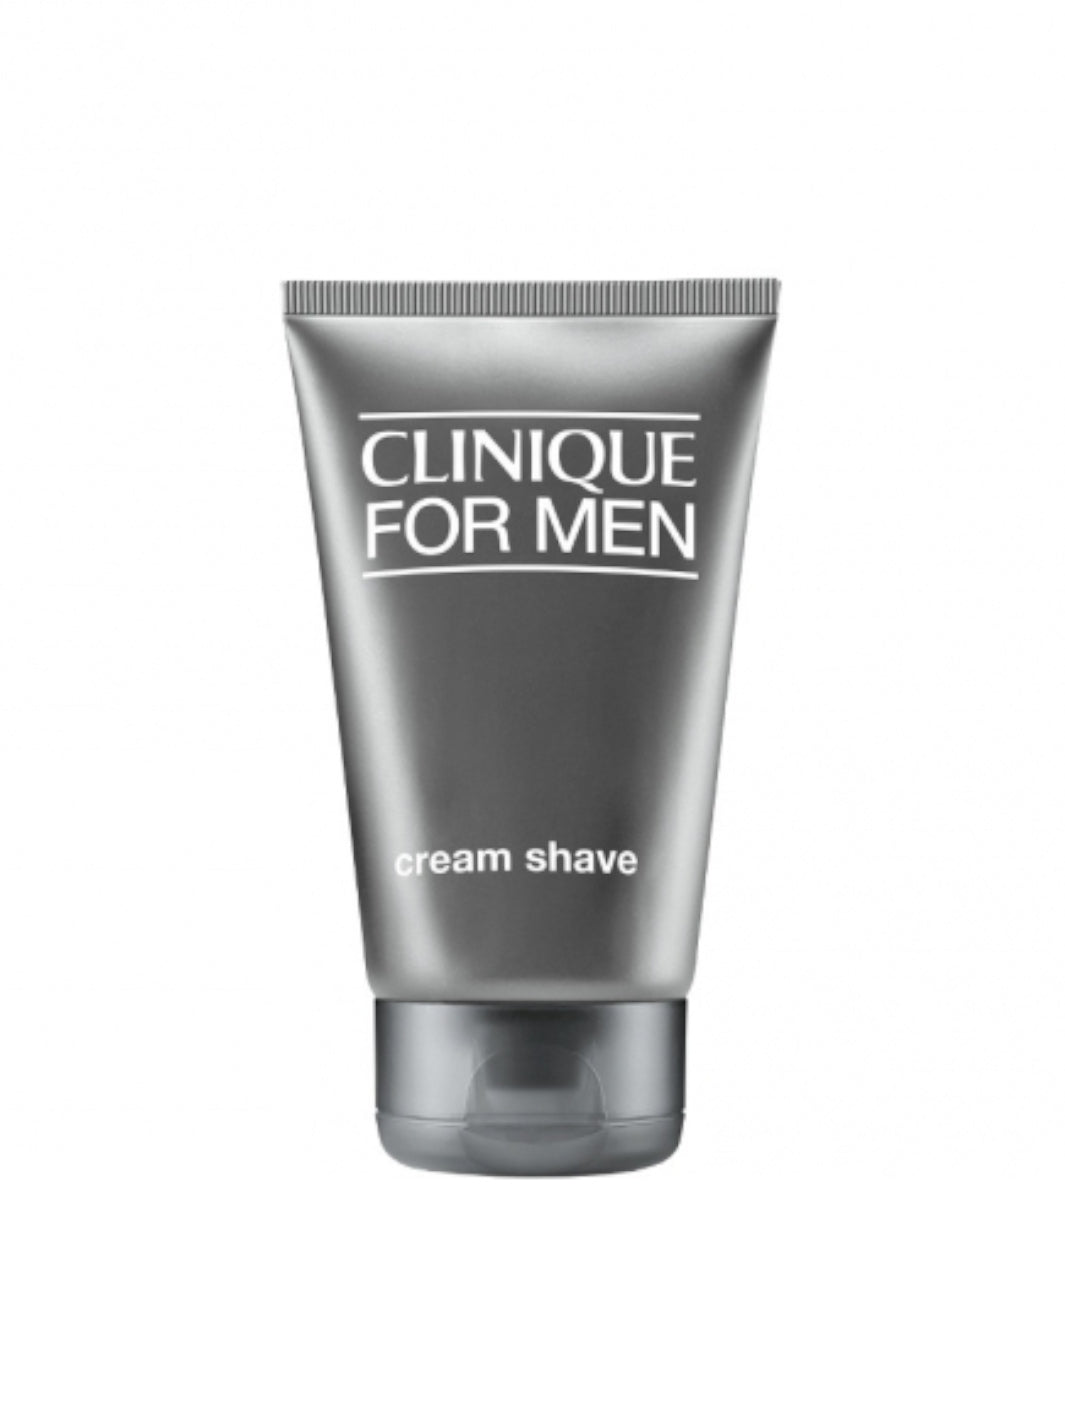 For  men cream shave